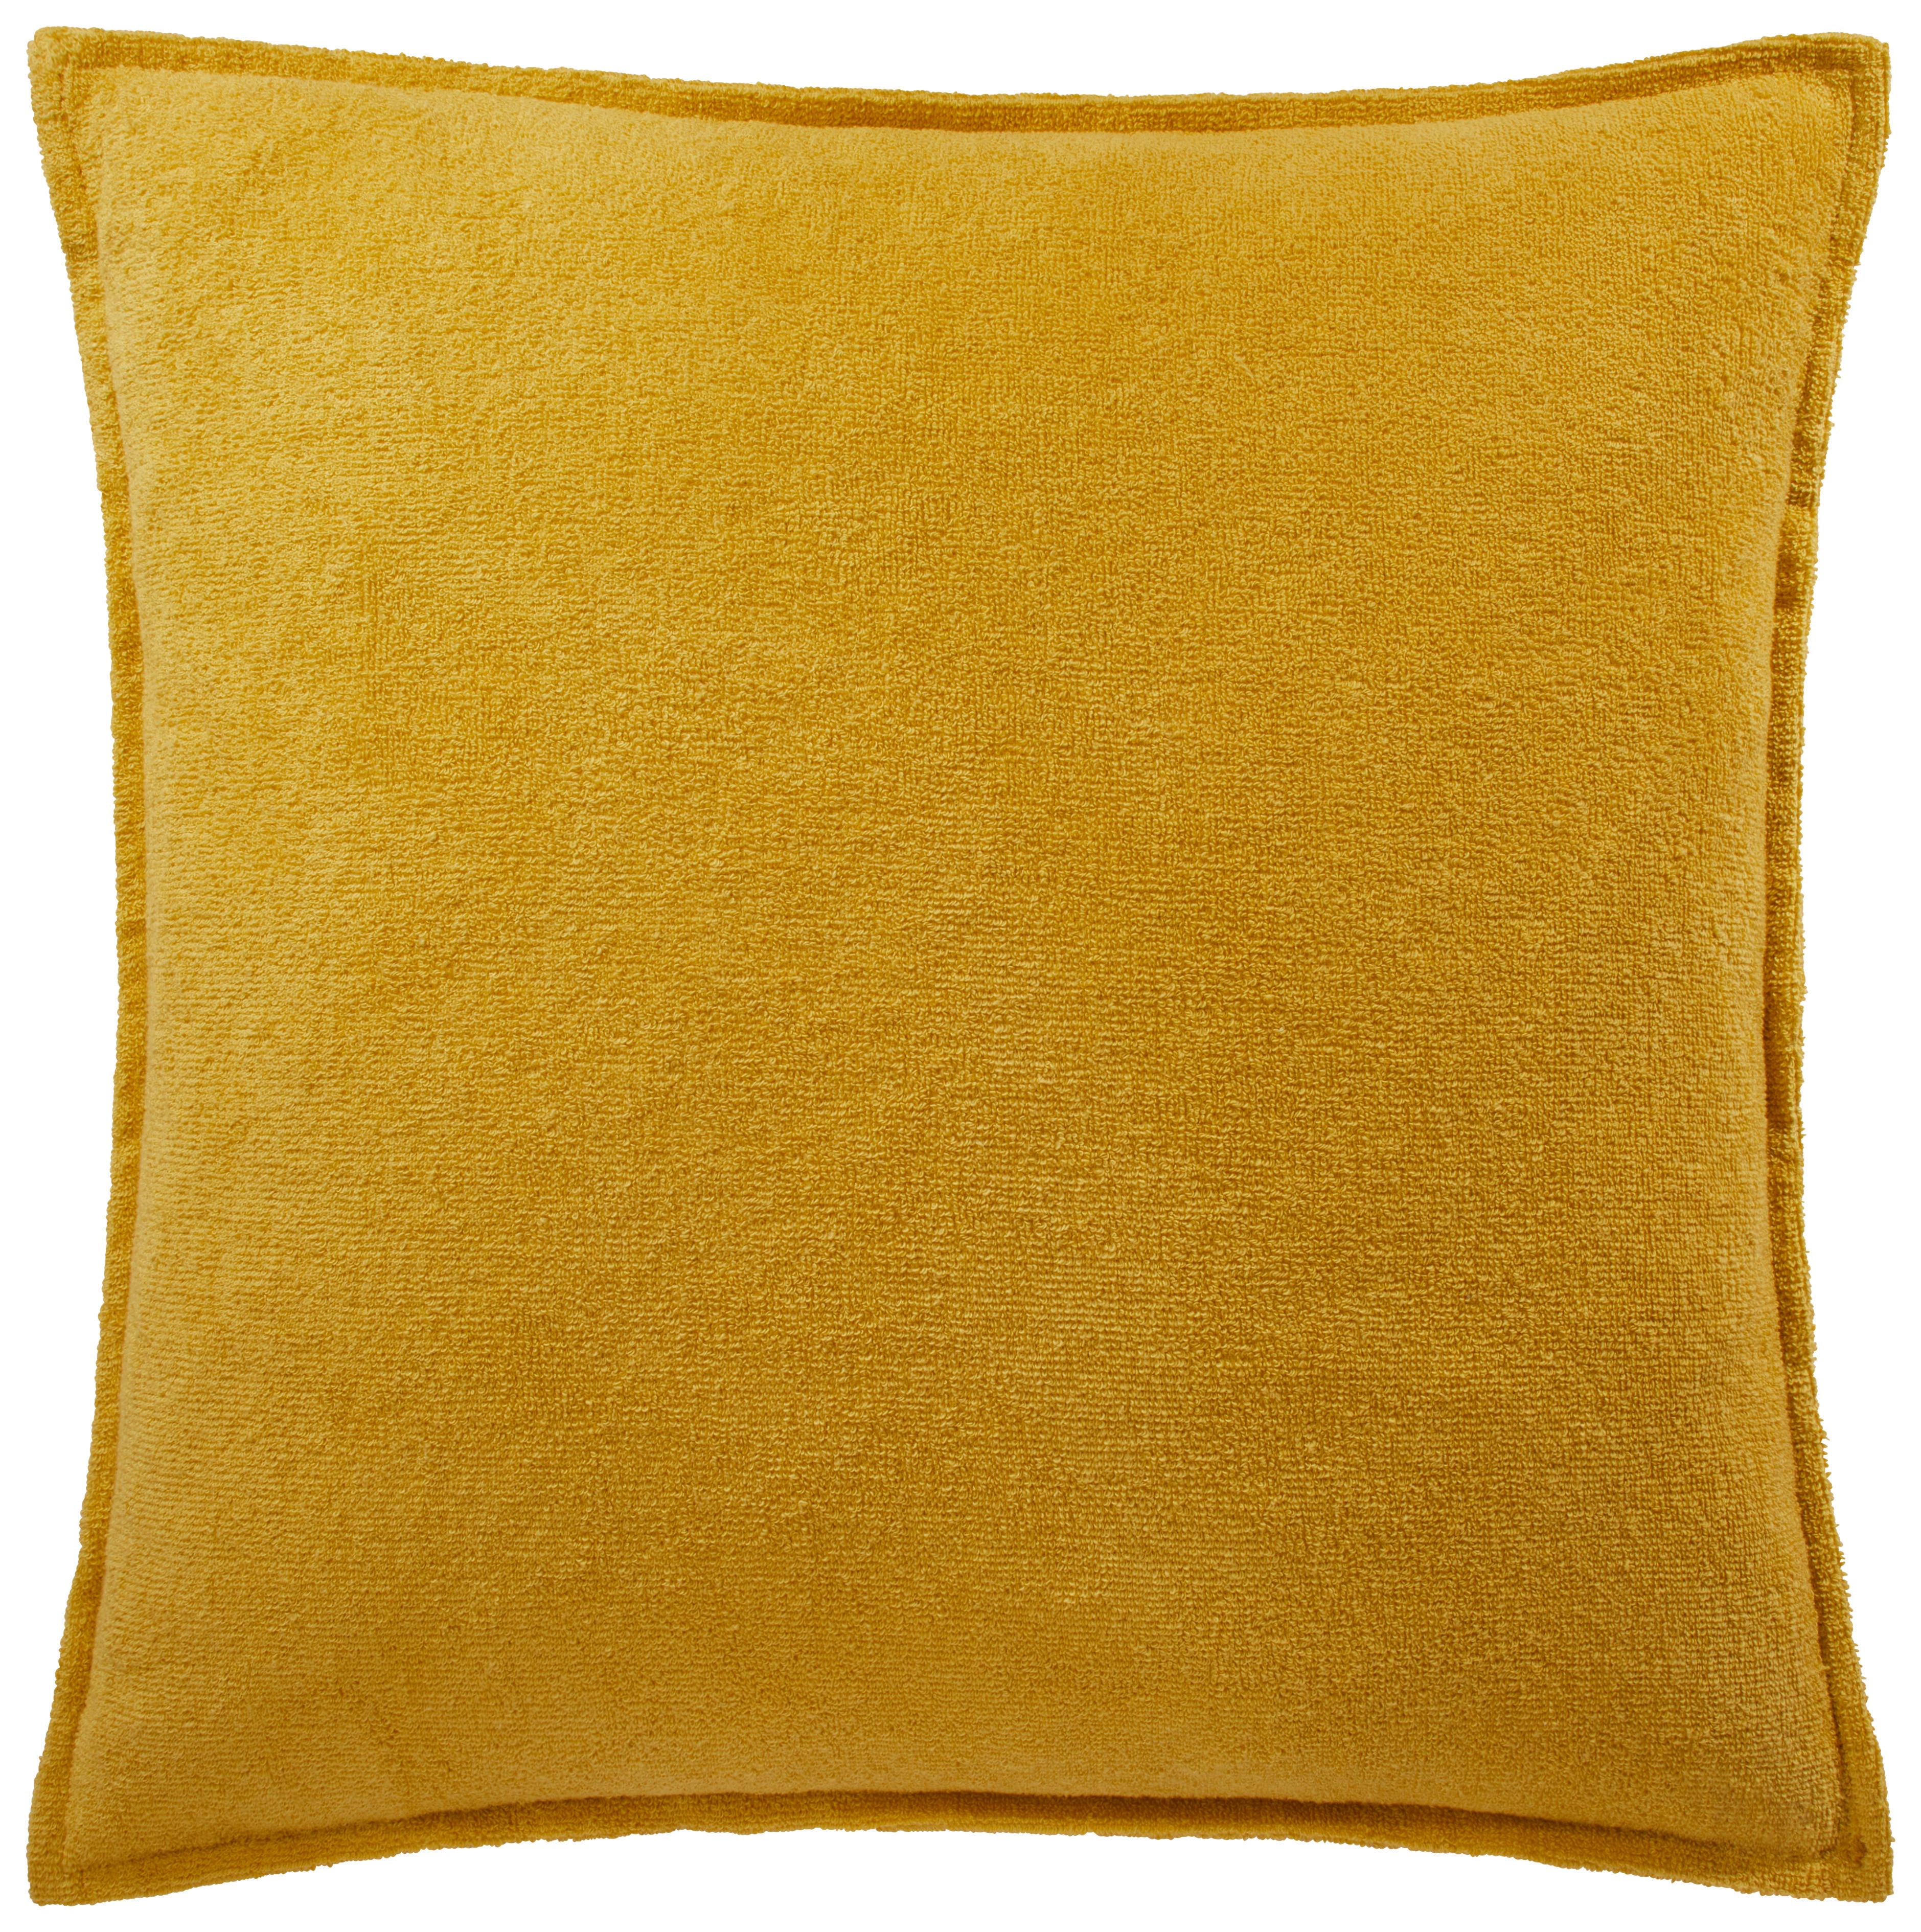 Zierkissen Lotte in Gelb ca. 45x45cm - Gelb, KONVENTIONELL, Textil (45/45cm) - Modern Living